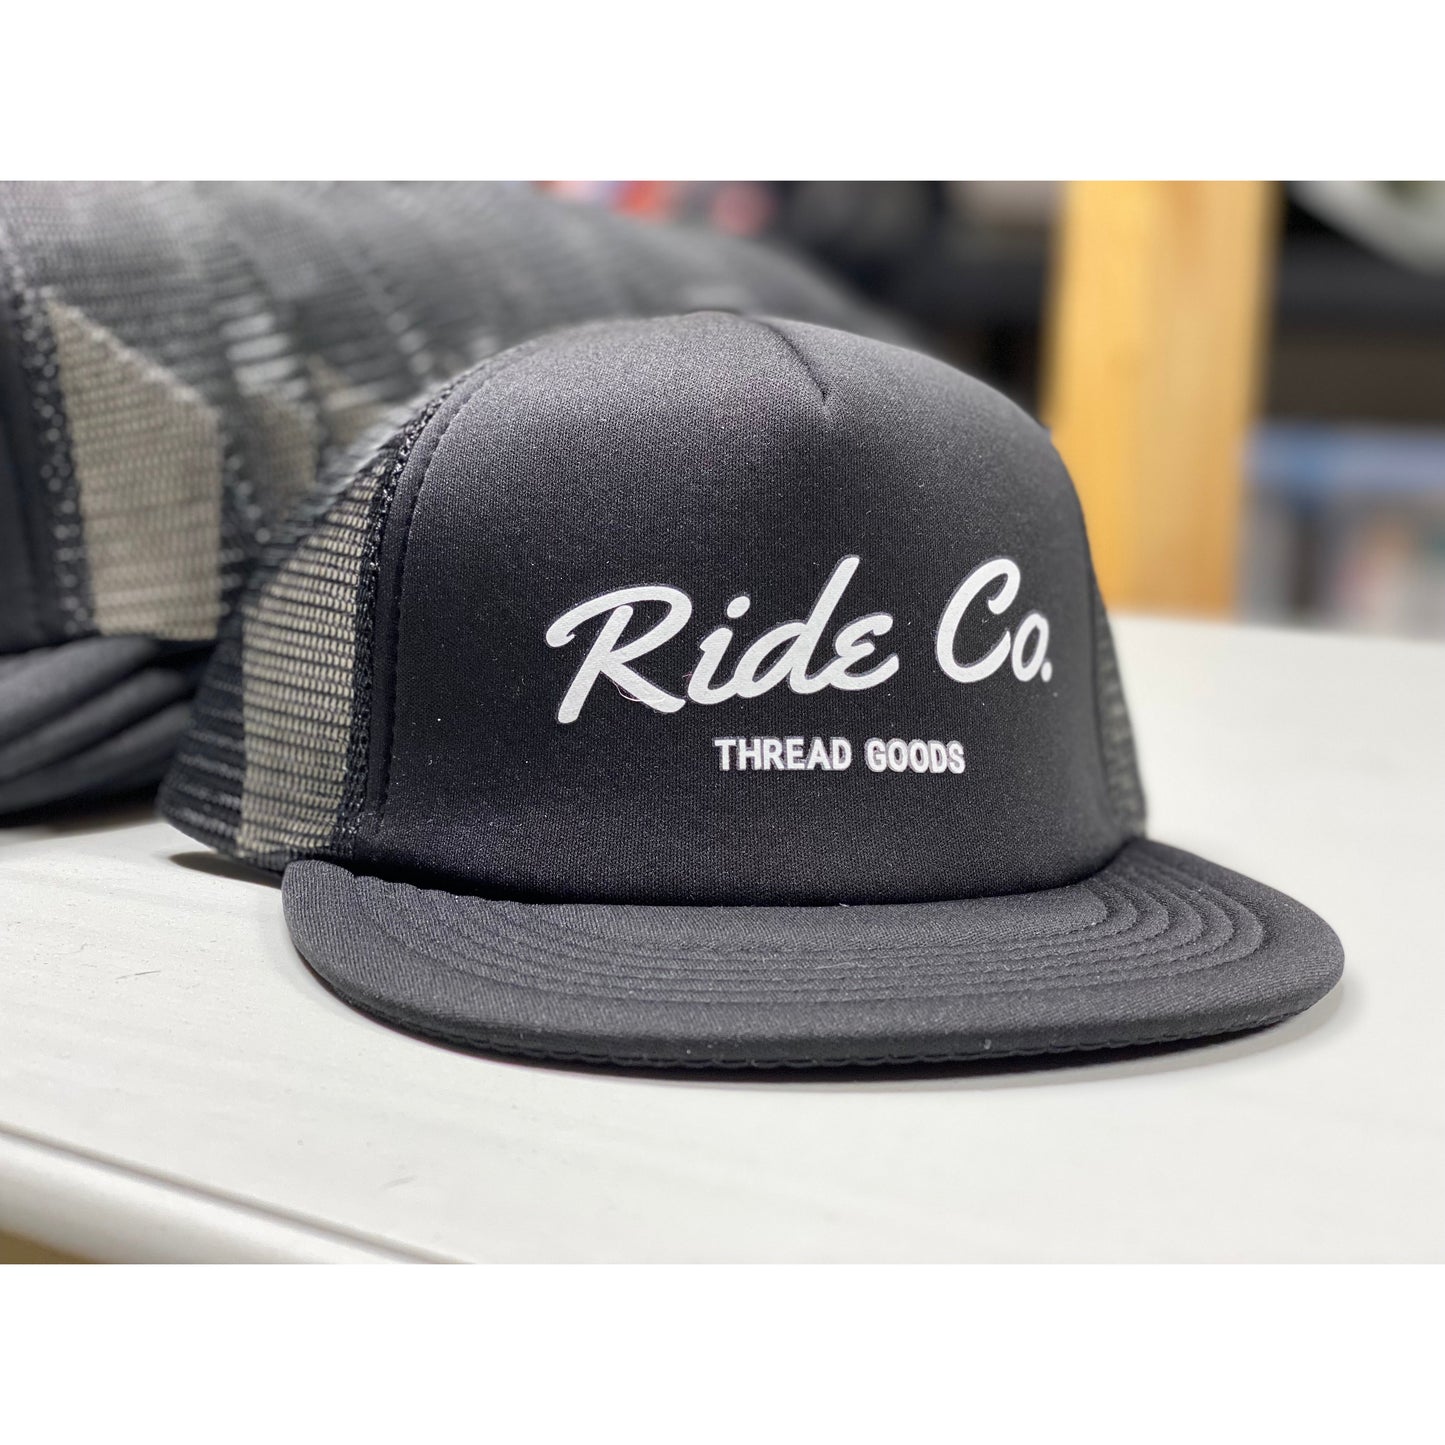 Ride Co. Foam Trucker Hat